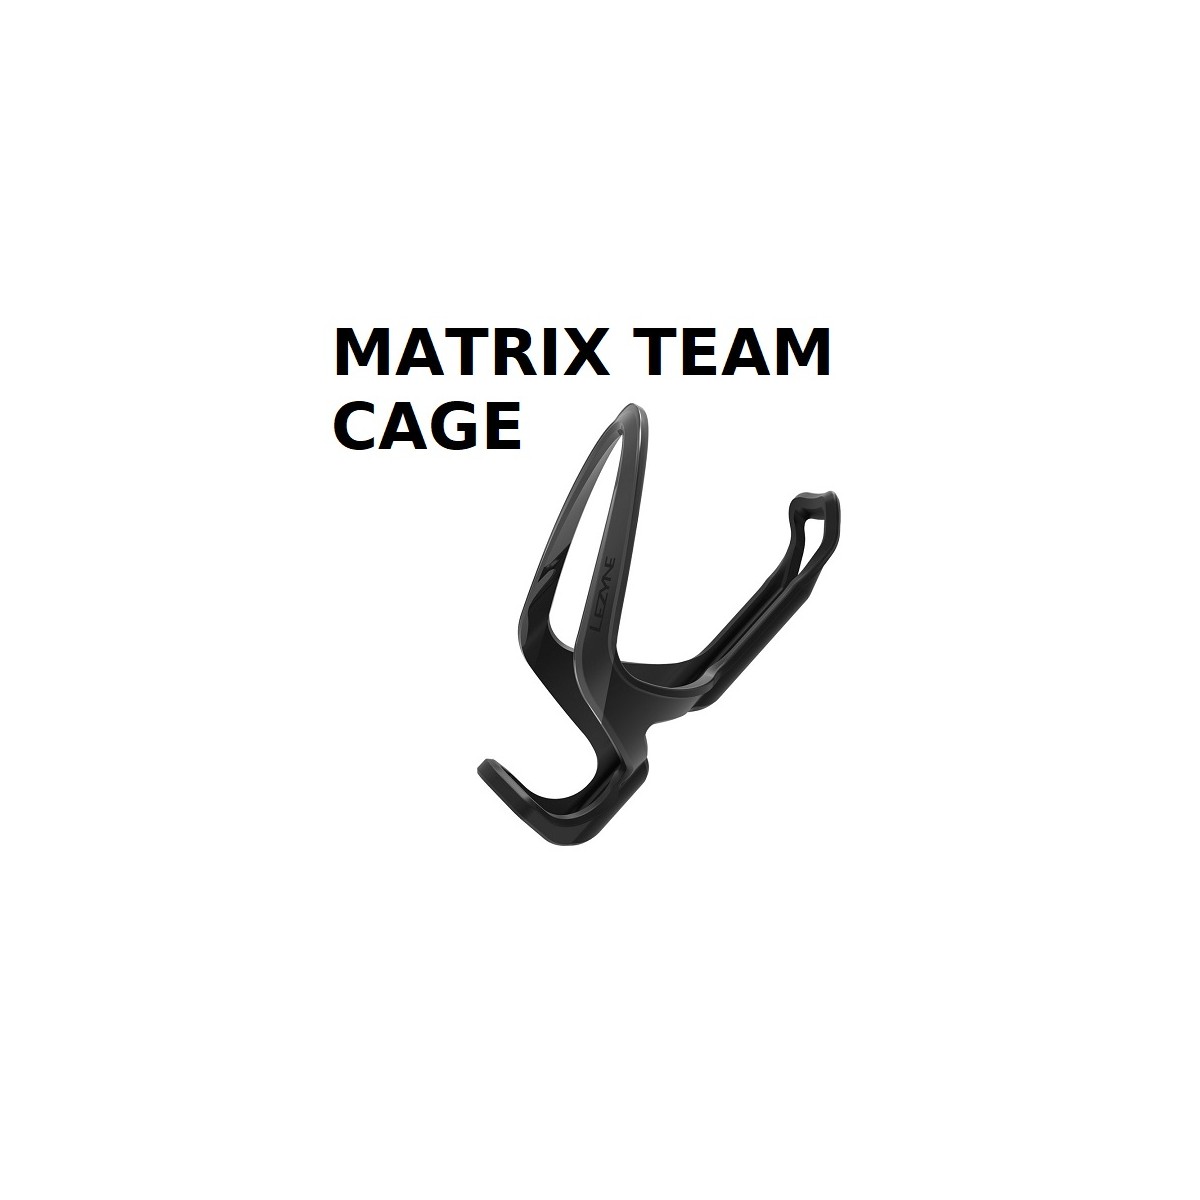 PORTE BIDON - Matrix team